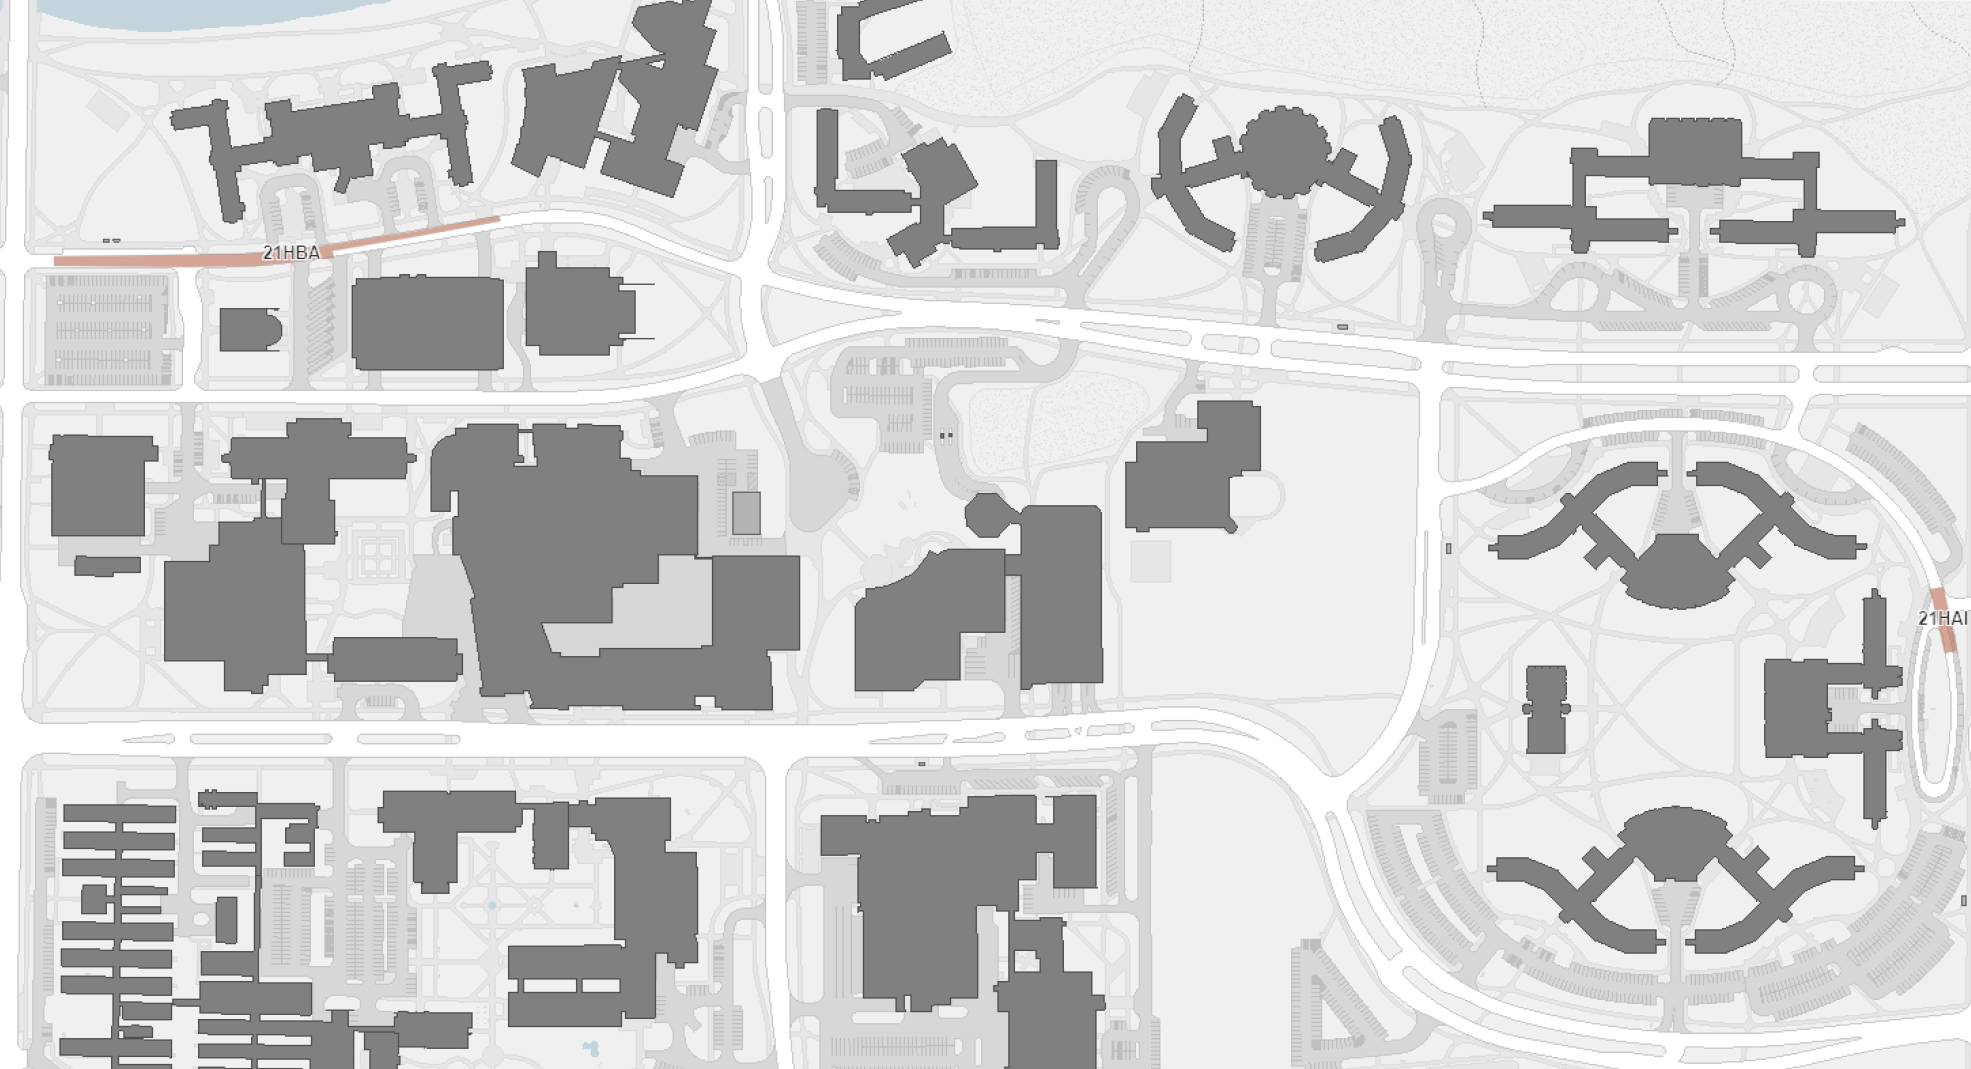 Campus roadway repairs map